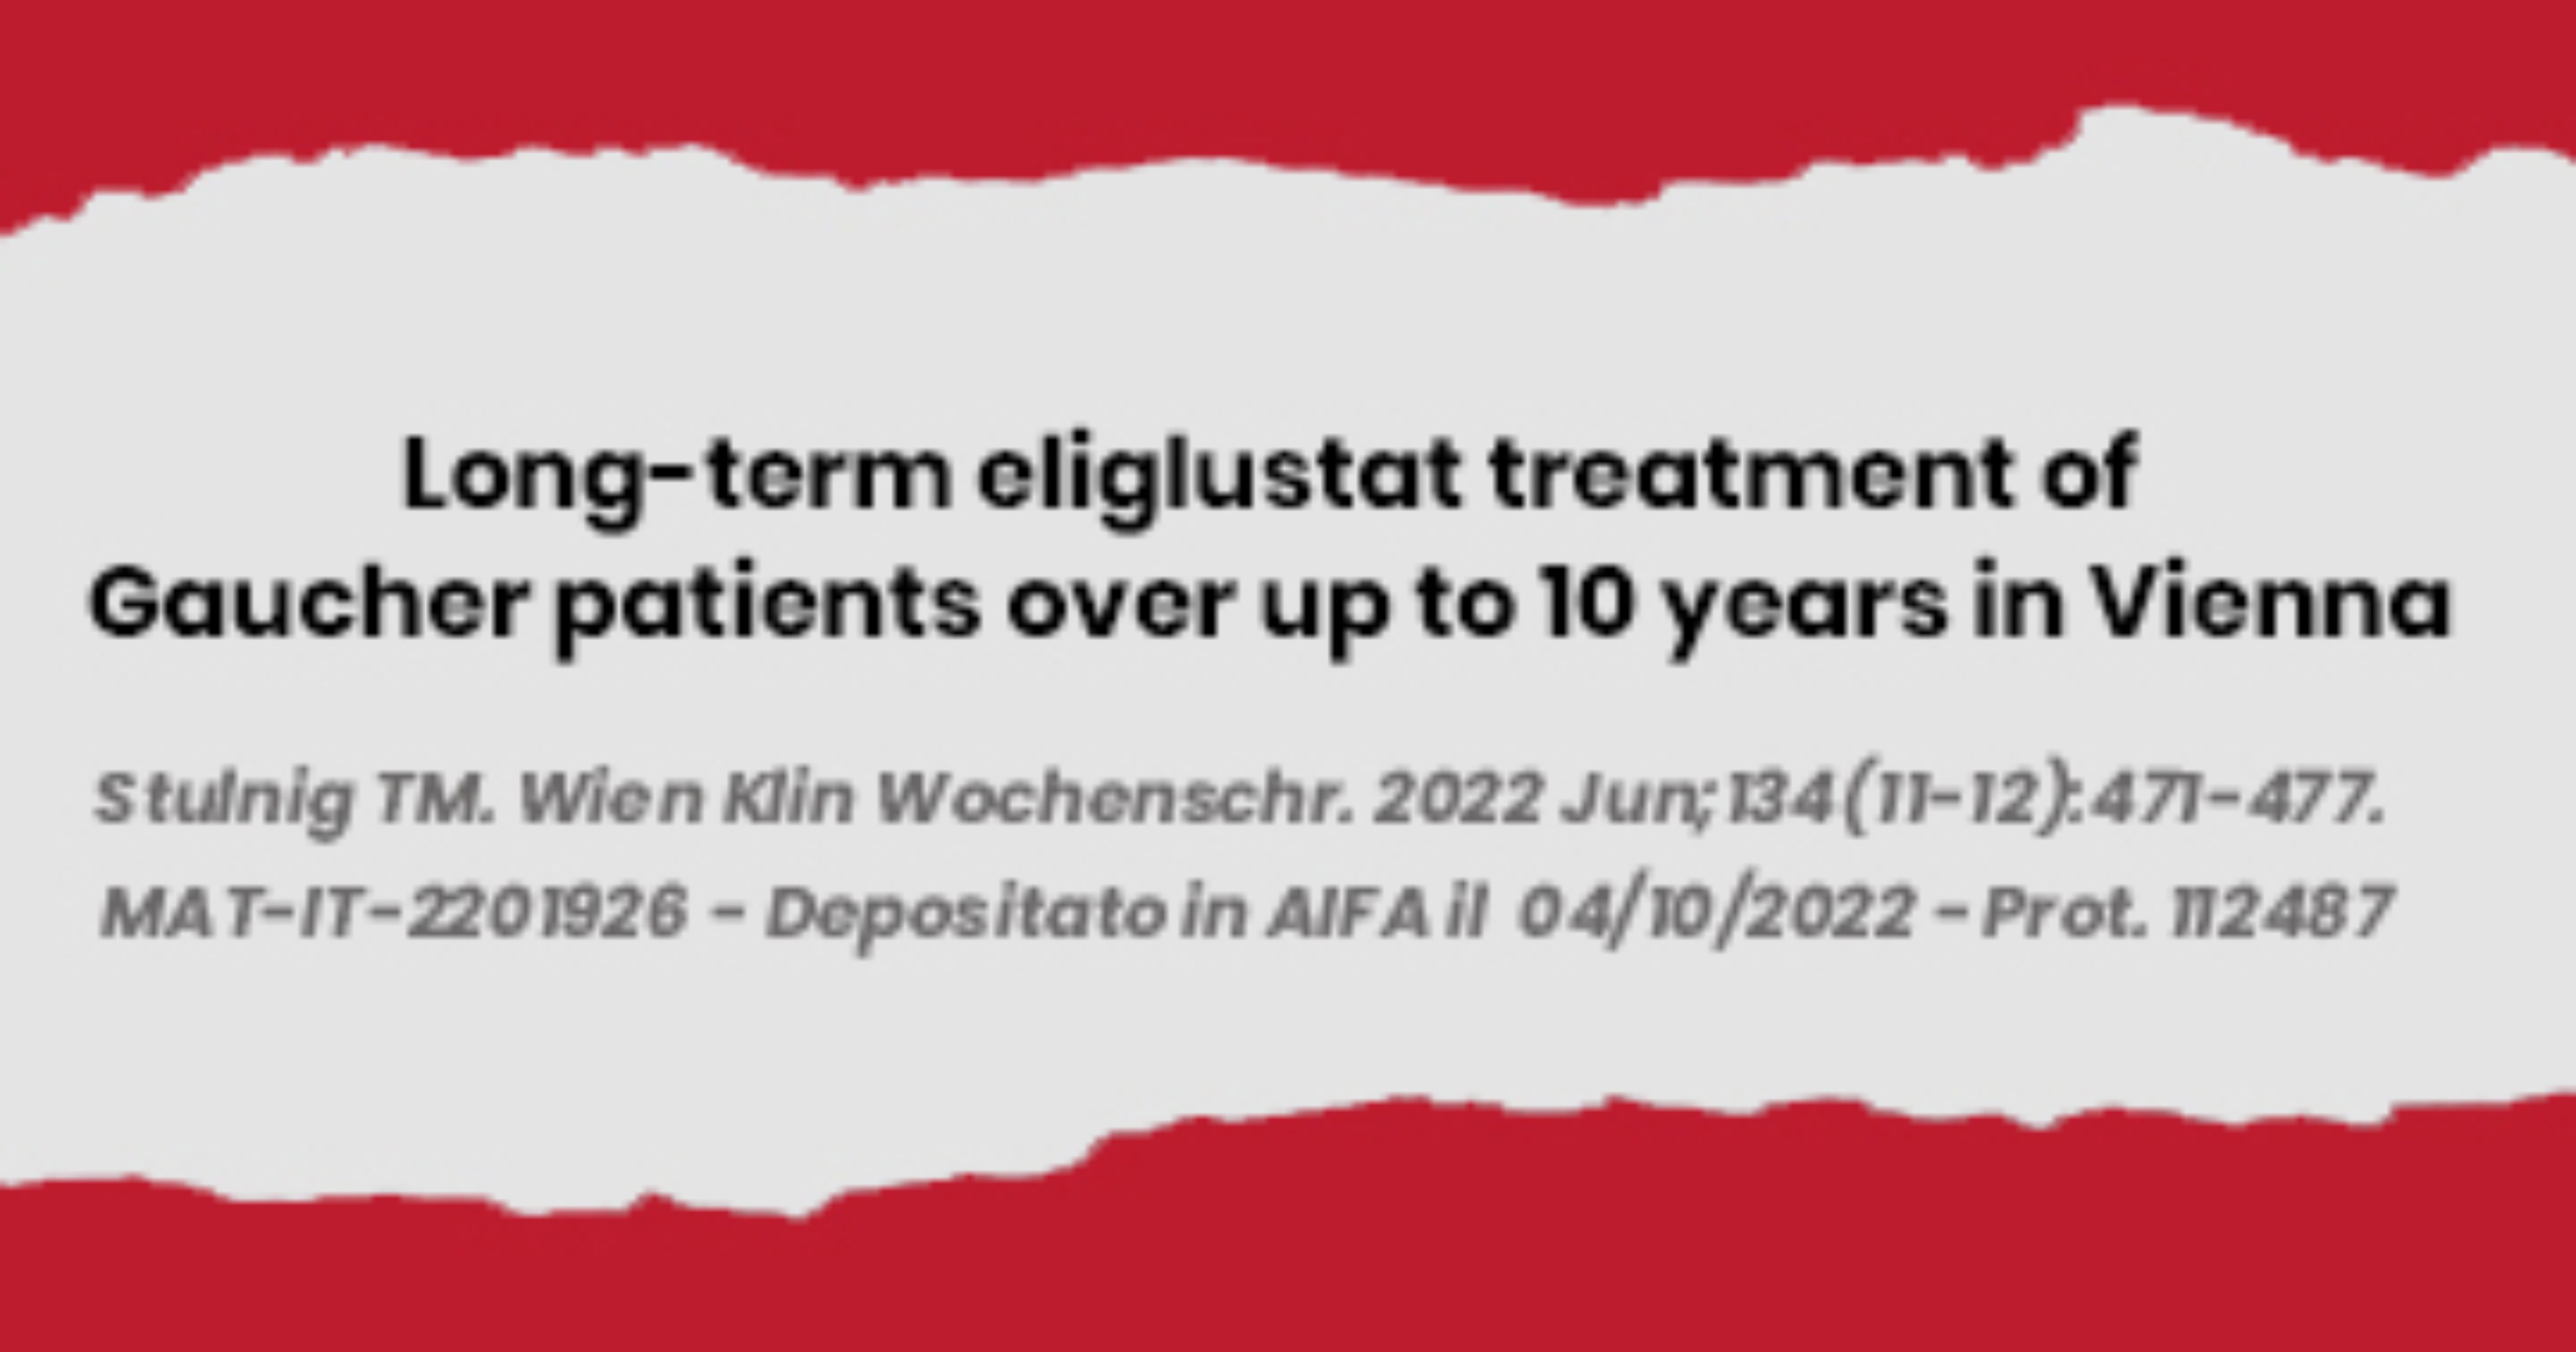 1_Trattamento-a-lungo-termine-con-eliglustat-in-pazienti-Gaucher